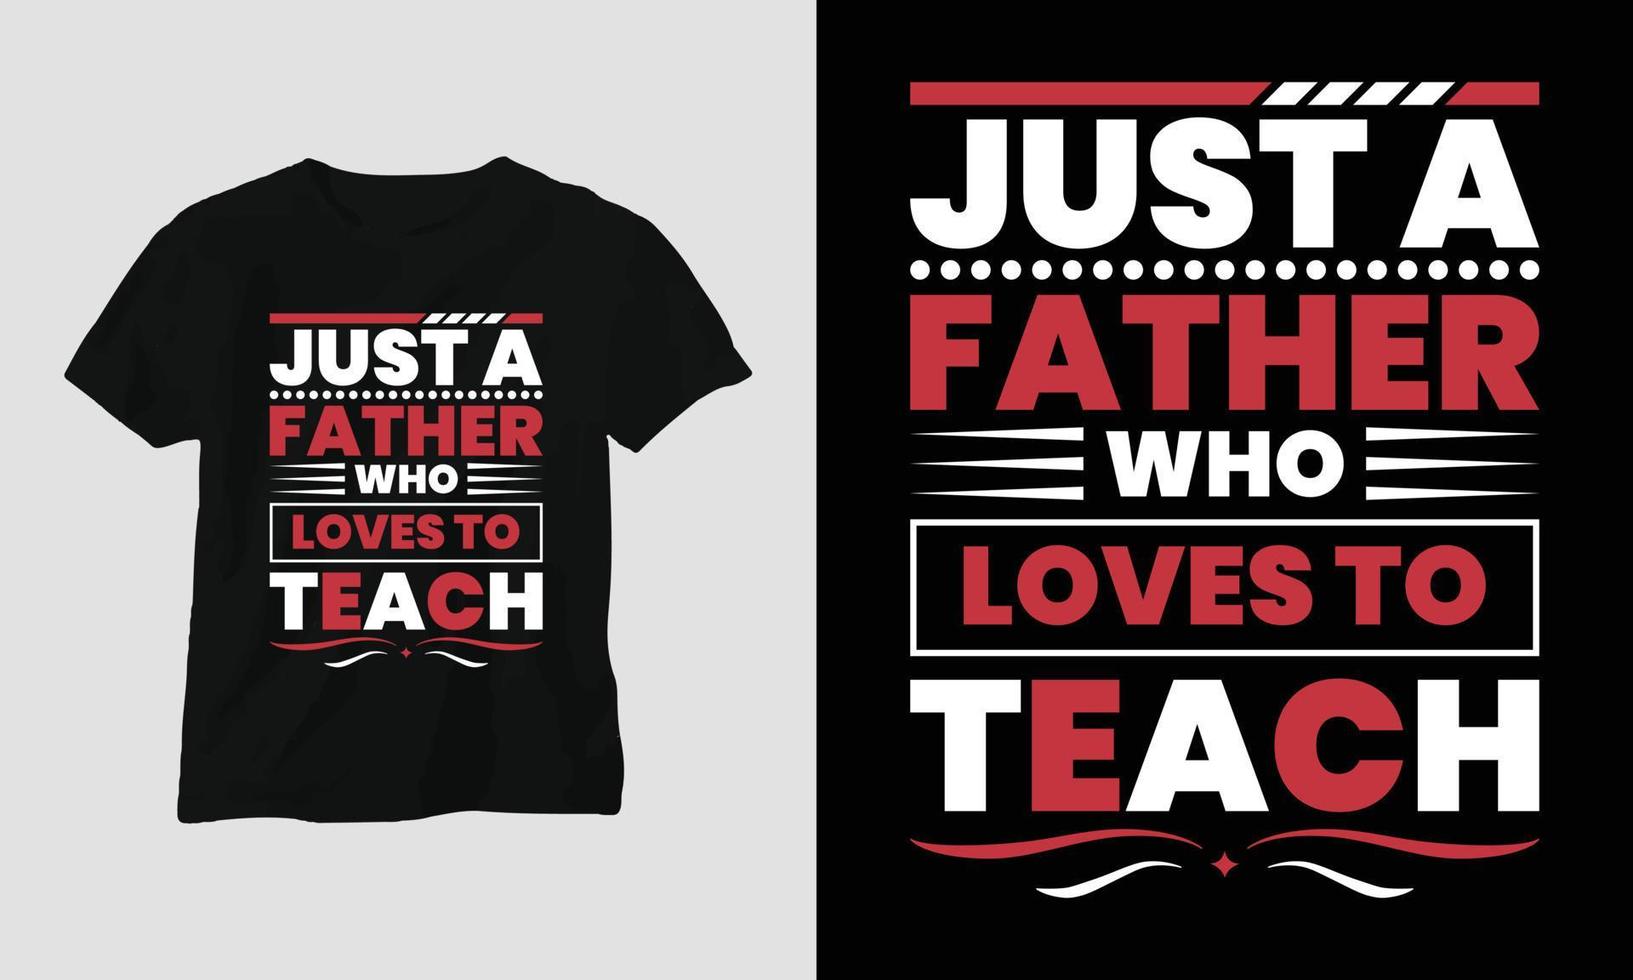 bara en far vem förälskelser till lära - lärare dag t-shirt vektor